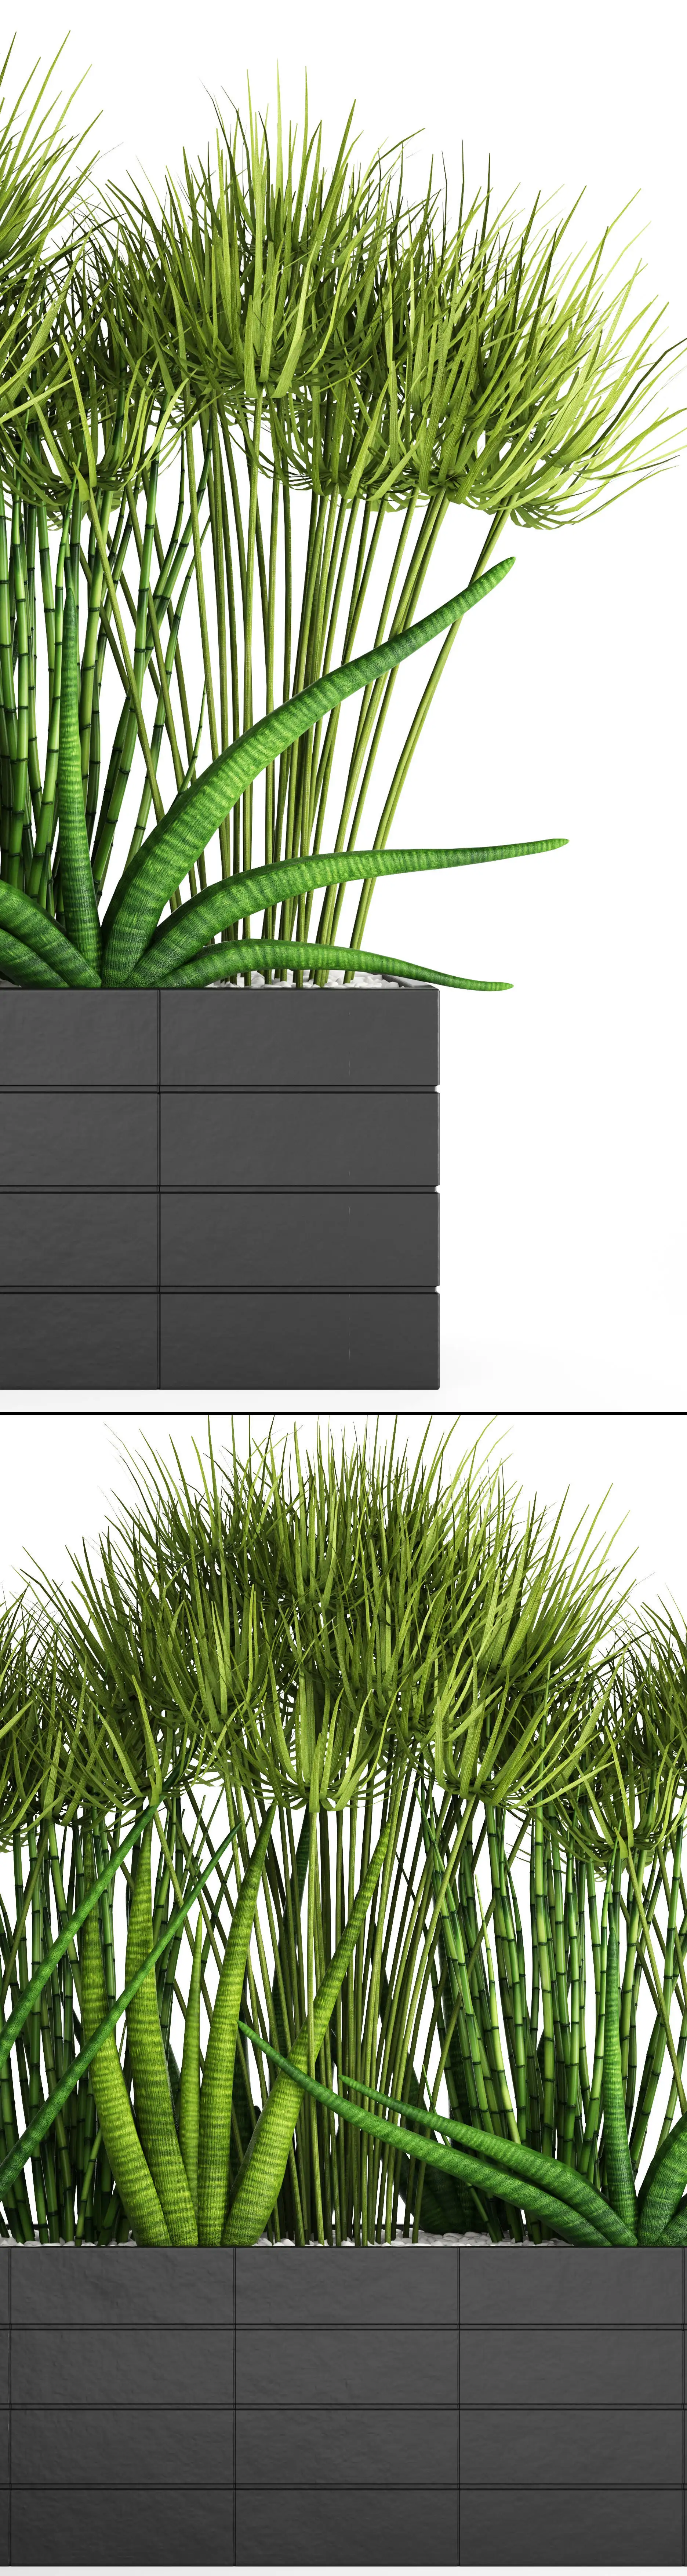 دانلود مدل سه بعدی گیاهان آپارتمانی 40 - 20